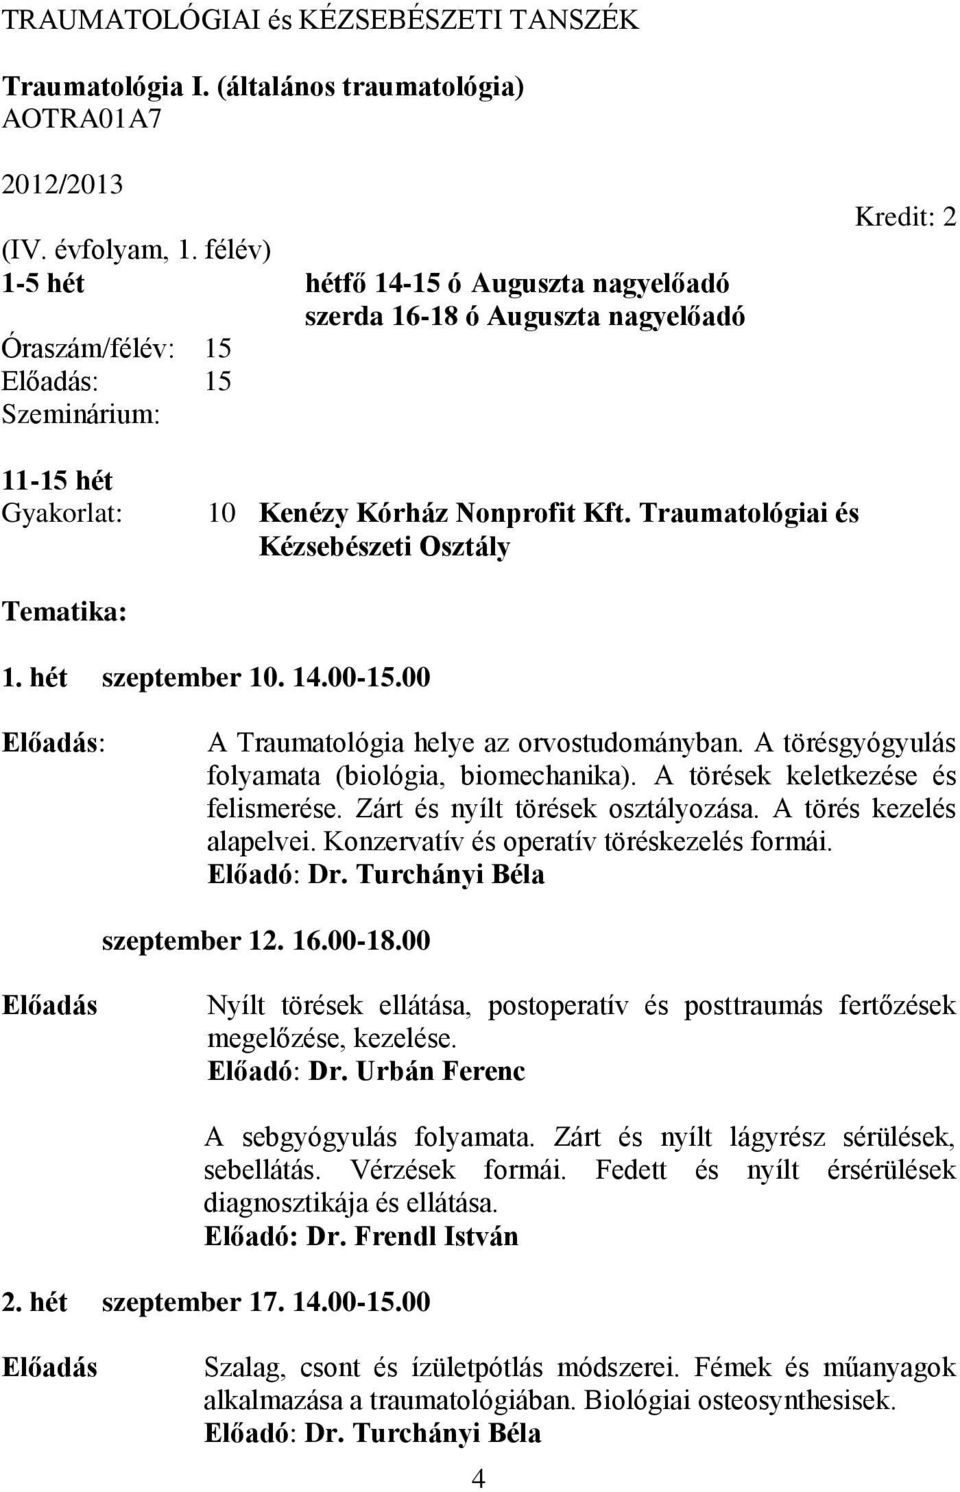 Traumatológiai és Kézsebészeti Osztály Tematika: 1. hét szeptember 10. 14.00-15.00 : A Traumatológia helye az orvostudományban. A törésgyógyulás folyamata (biológia, biomechanika).